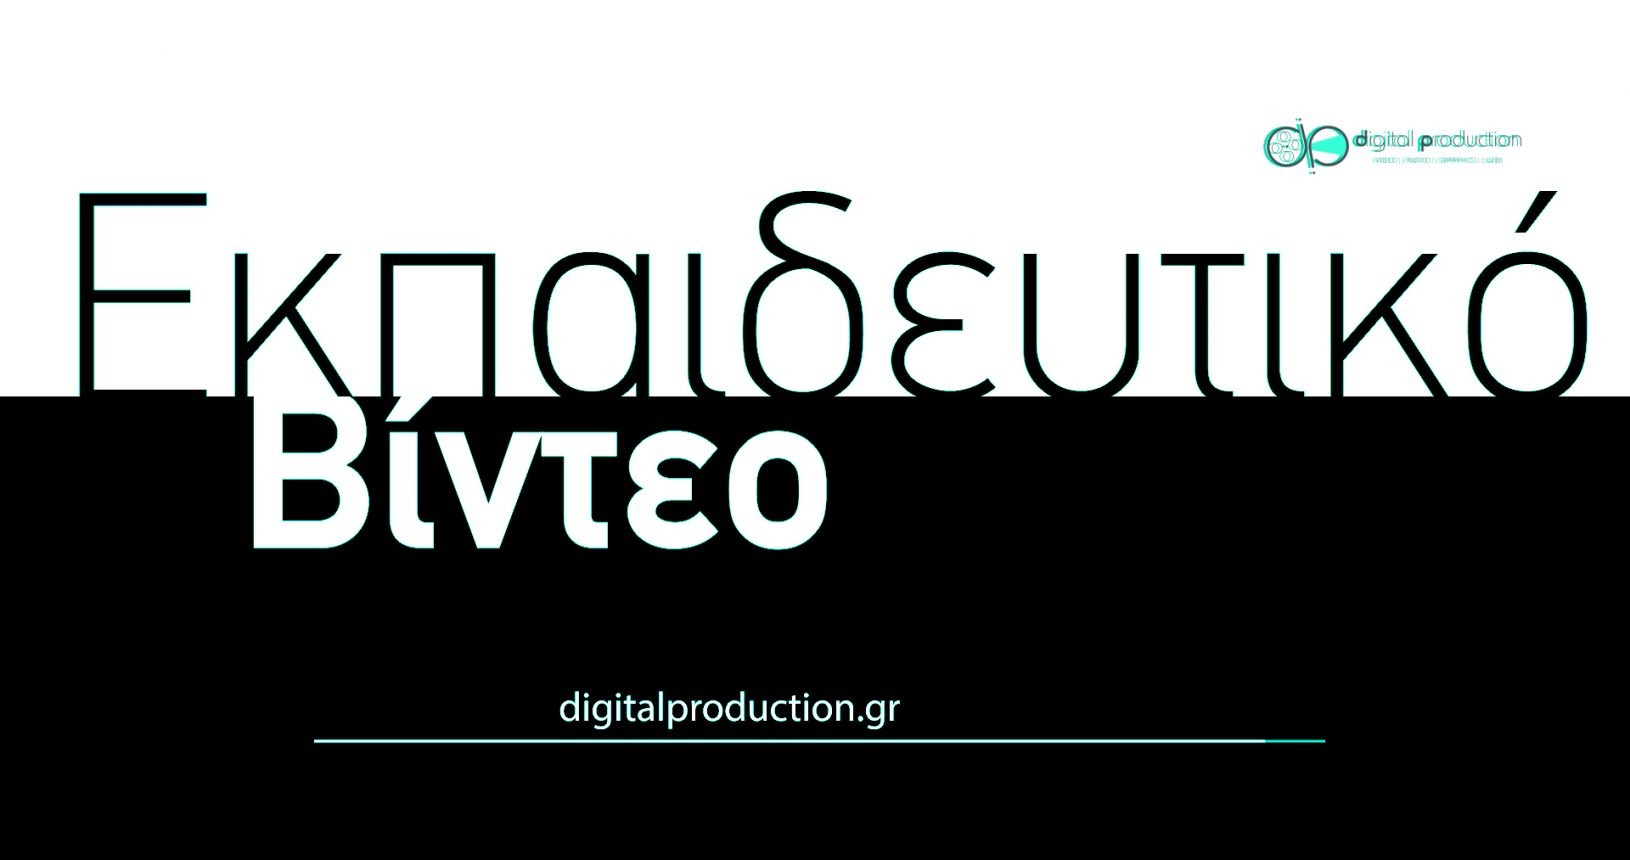 Δημιουργία εκπαιδευτικού βίντεο | Digital Production